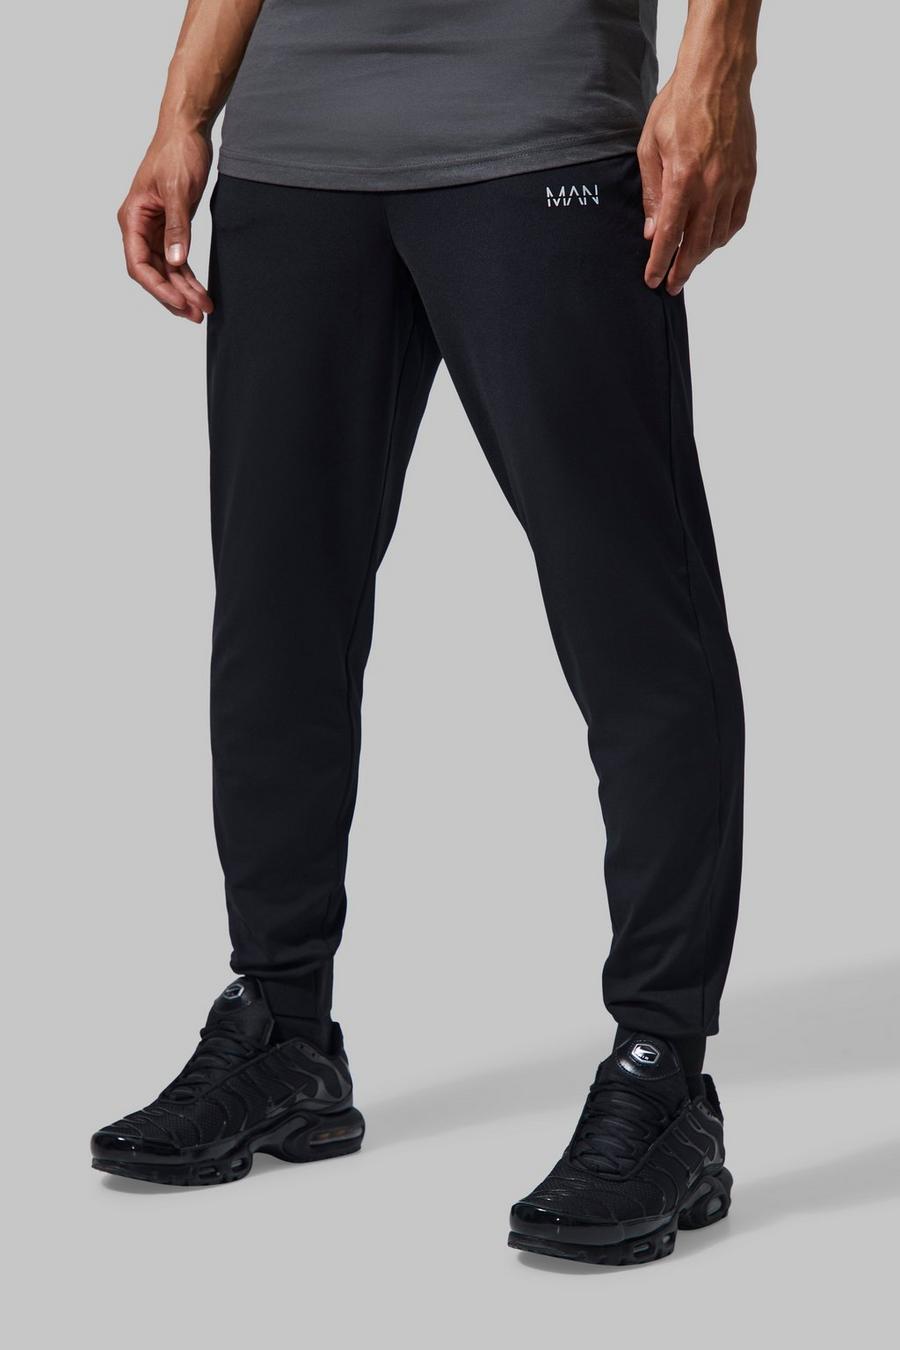 שחור black מכנסי ריצה ספורטיביים לחדר הכושר עם כיתוב Man וחגורת מותניים מובנית